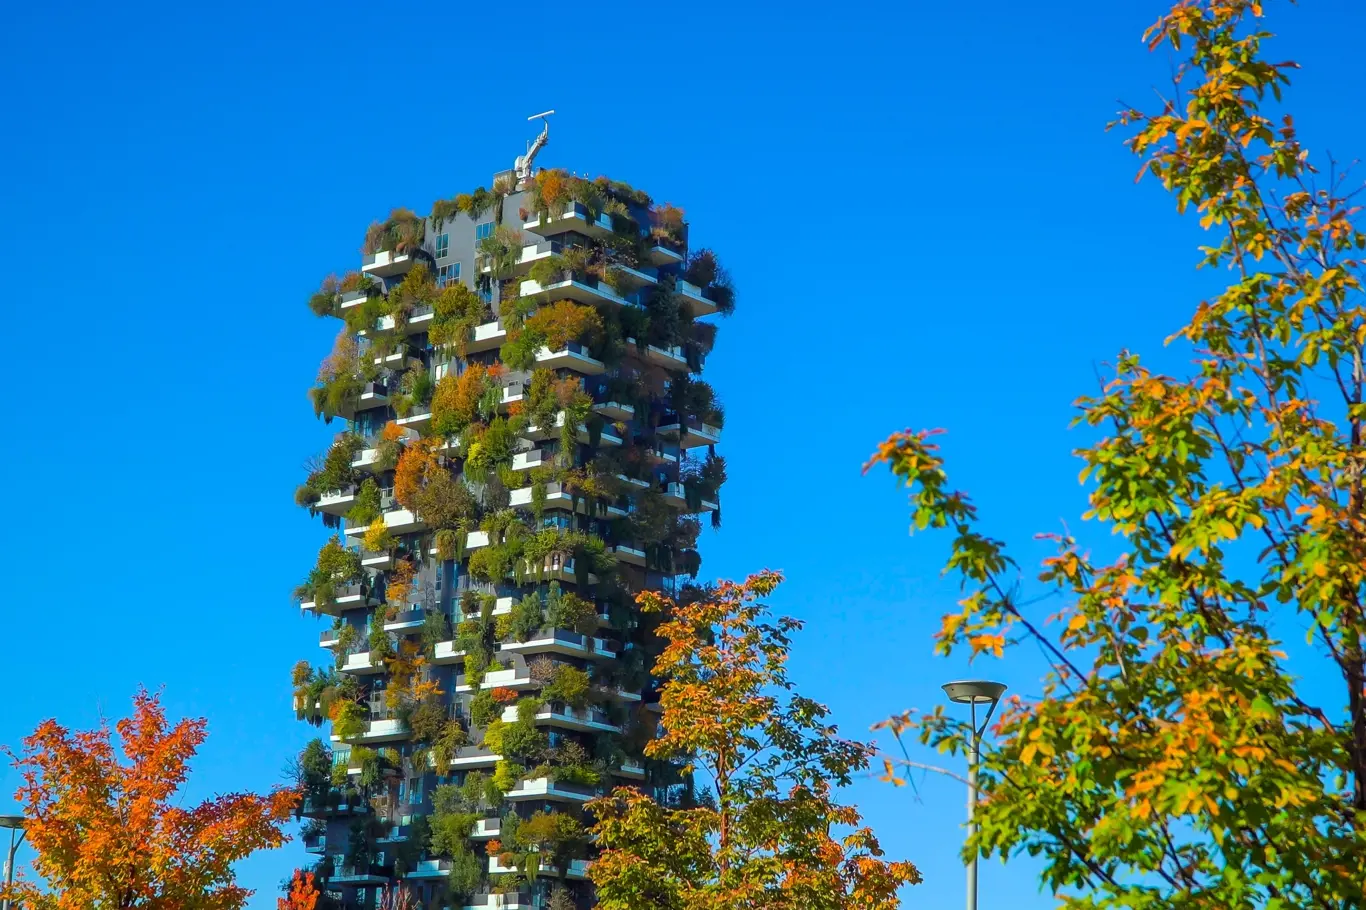 Vertikální zahrady mohou být cestou, jak do městské krajiny přidat více zeleně, touto cestou se vydává více a více architektů. Tento mrakodrap  ,,svislý les" v Miláně zdobí krajinu již od roku 2014.